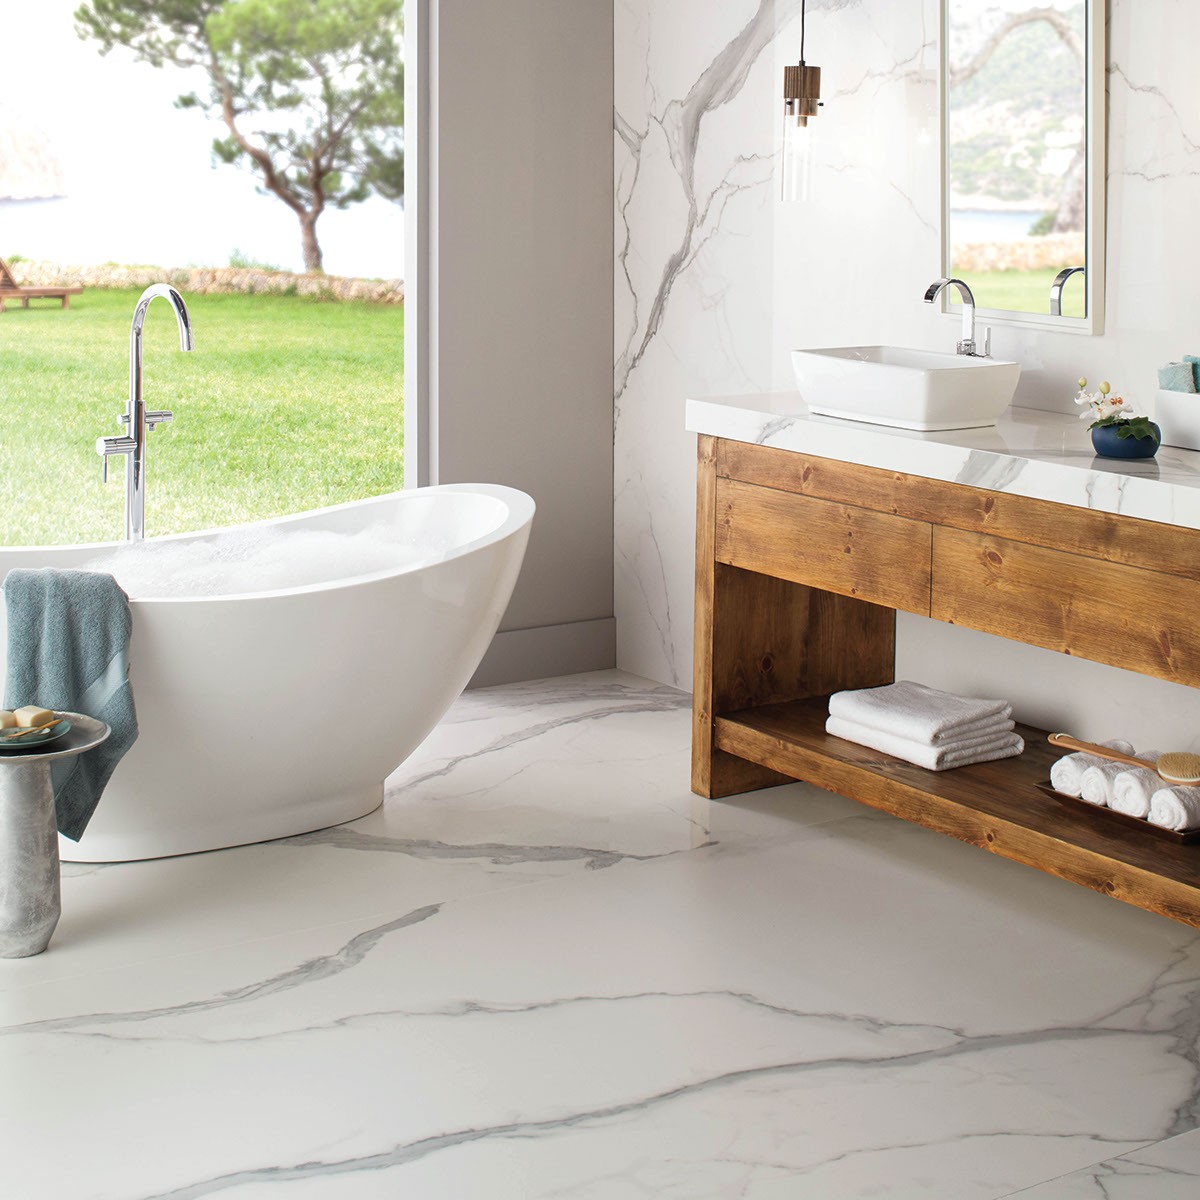 Tile in bathroom | Floorco Premium